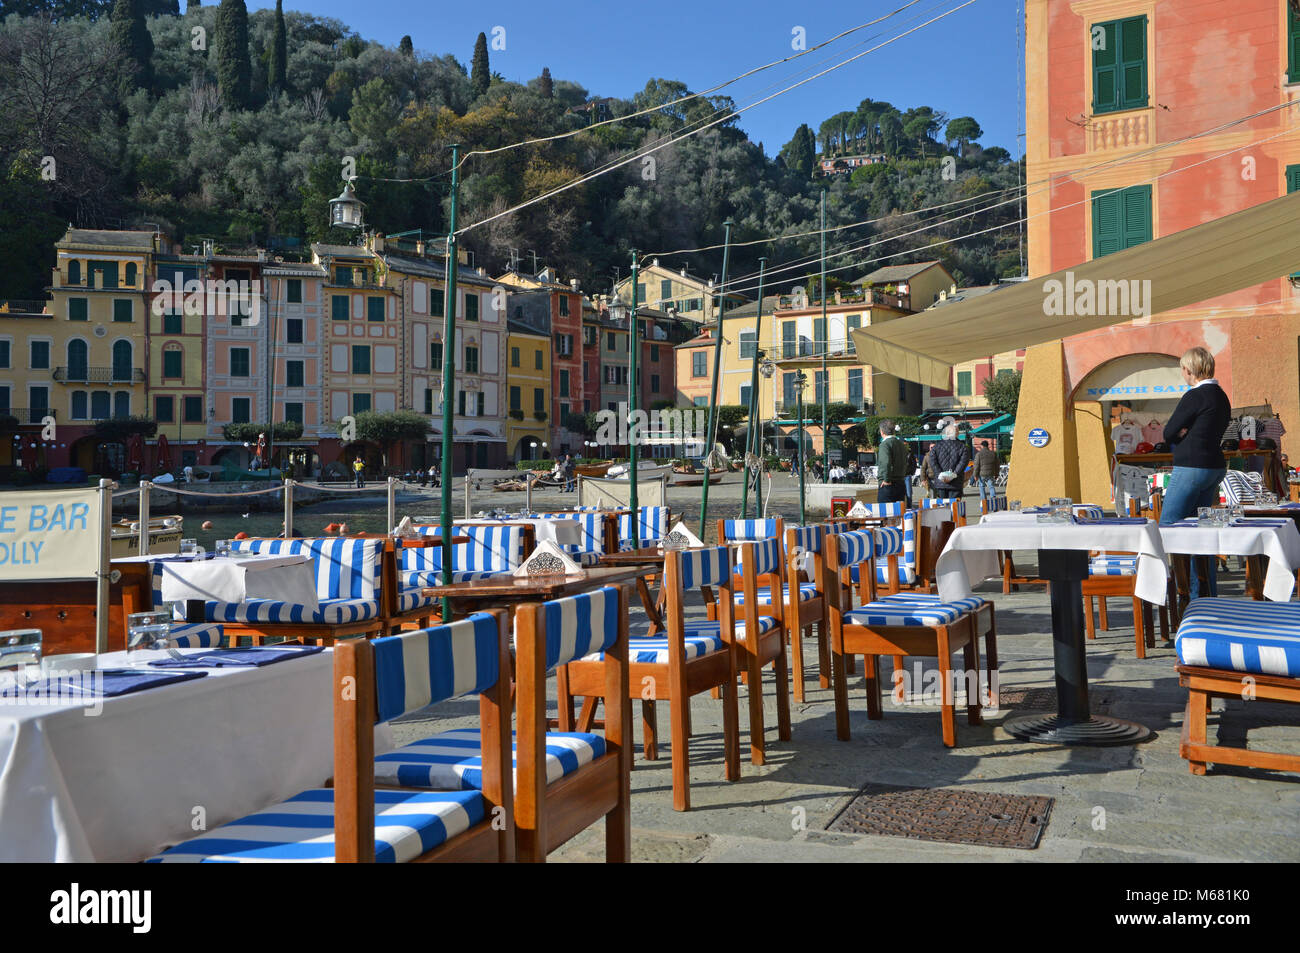 Restaurant table by the sea, Portofino, Italy Stock Photo